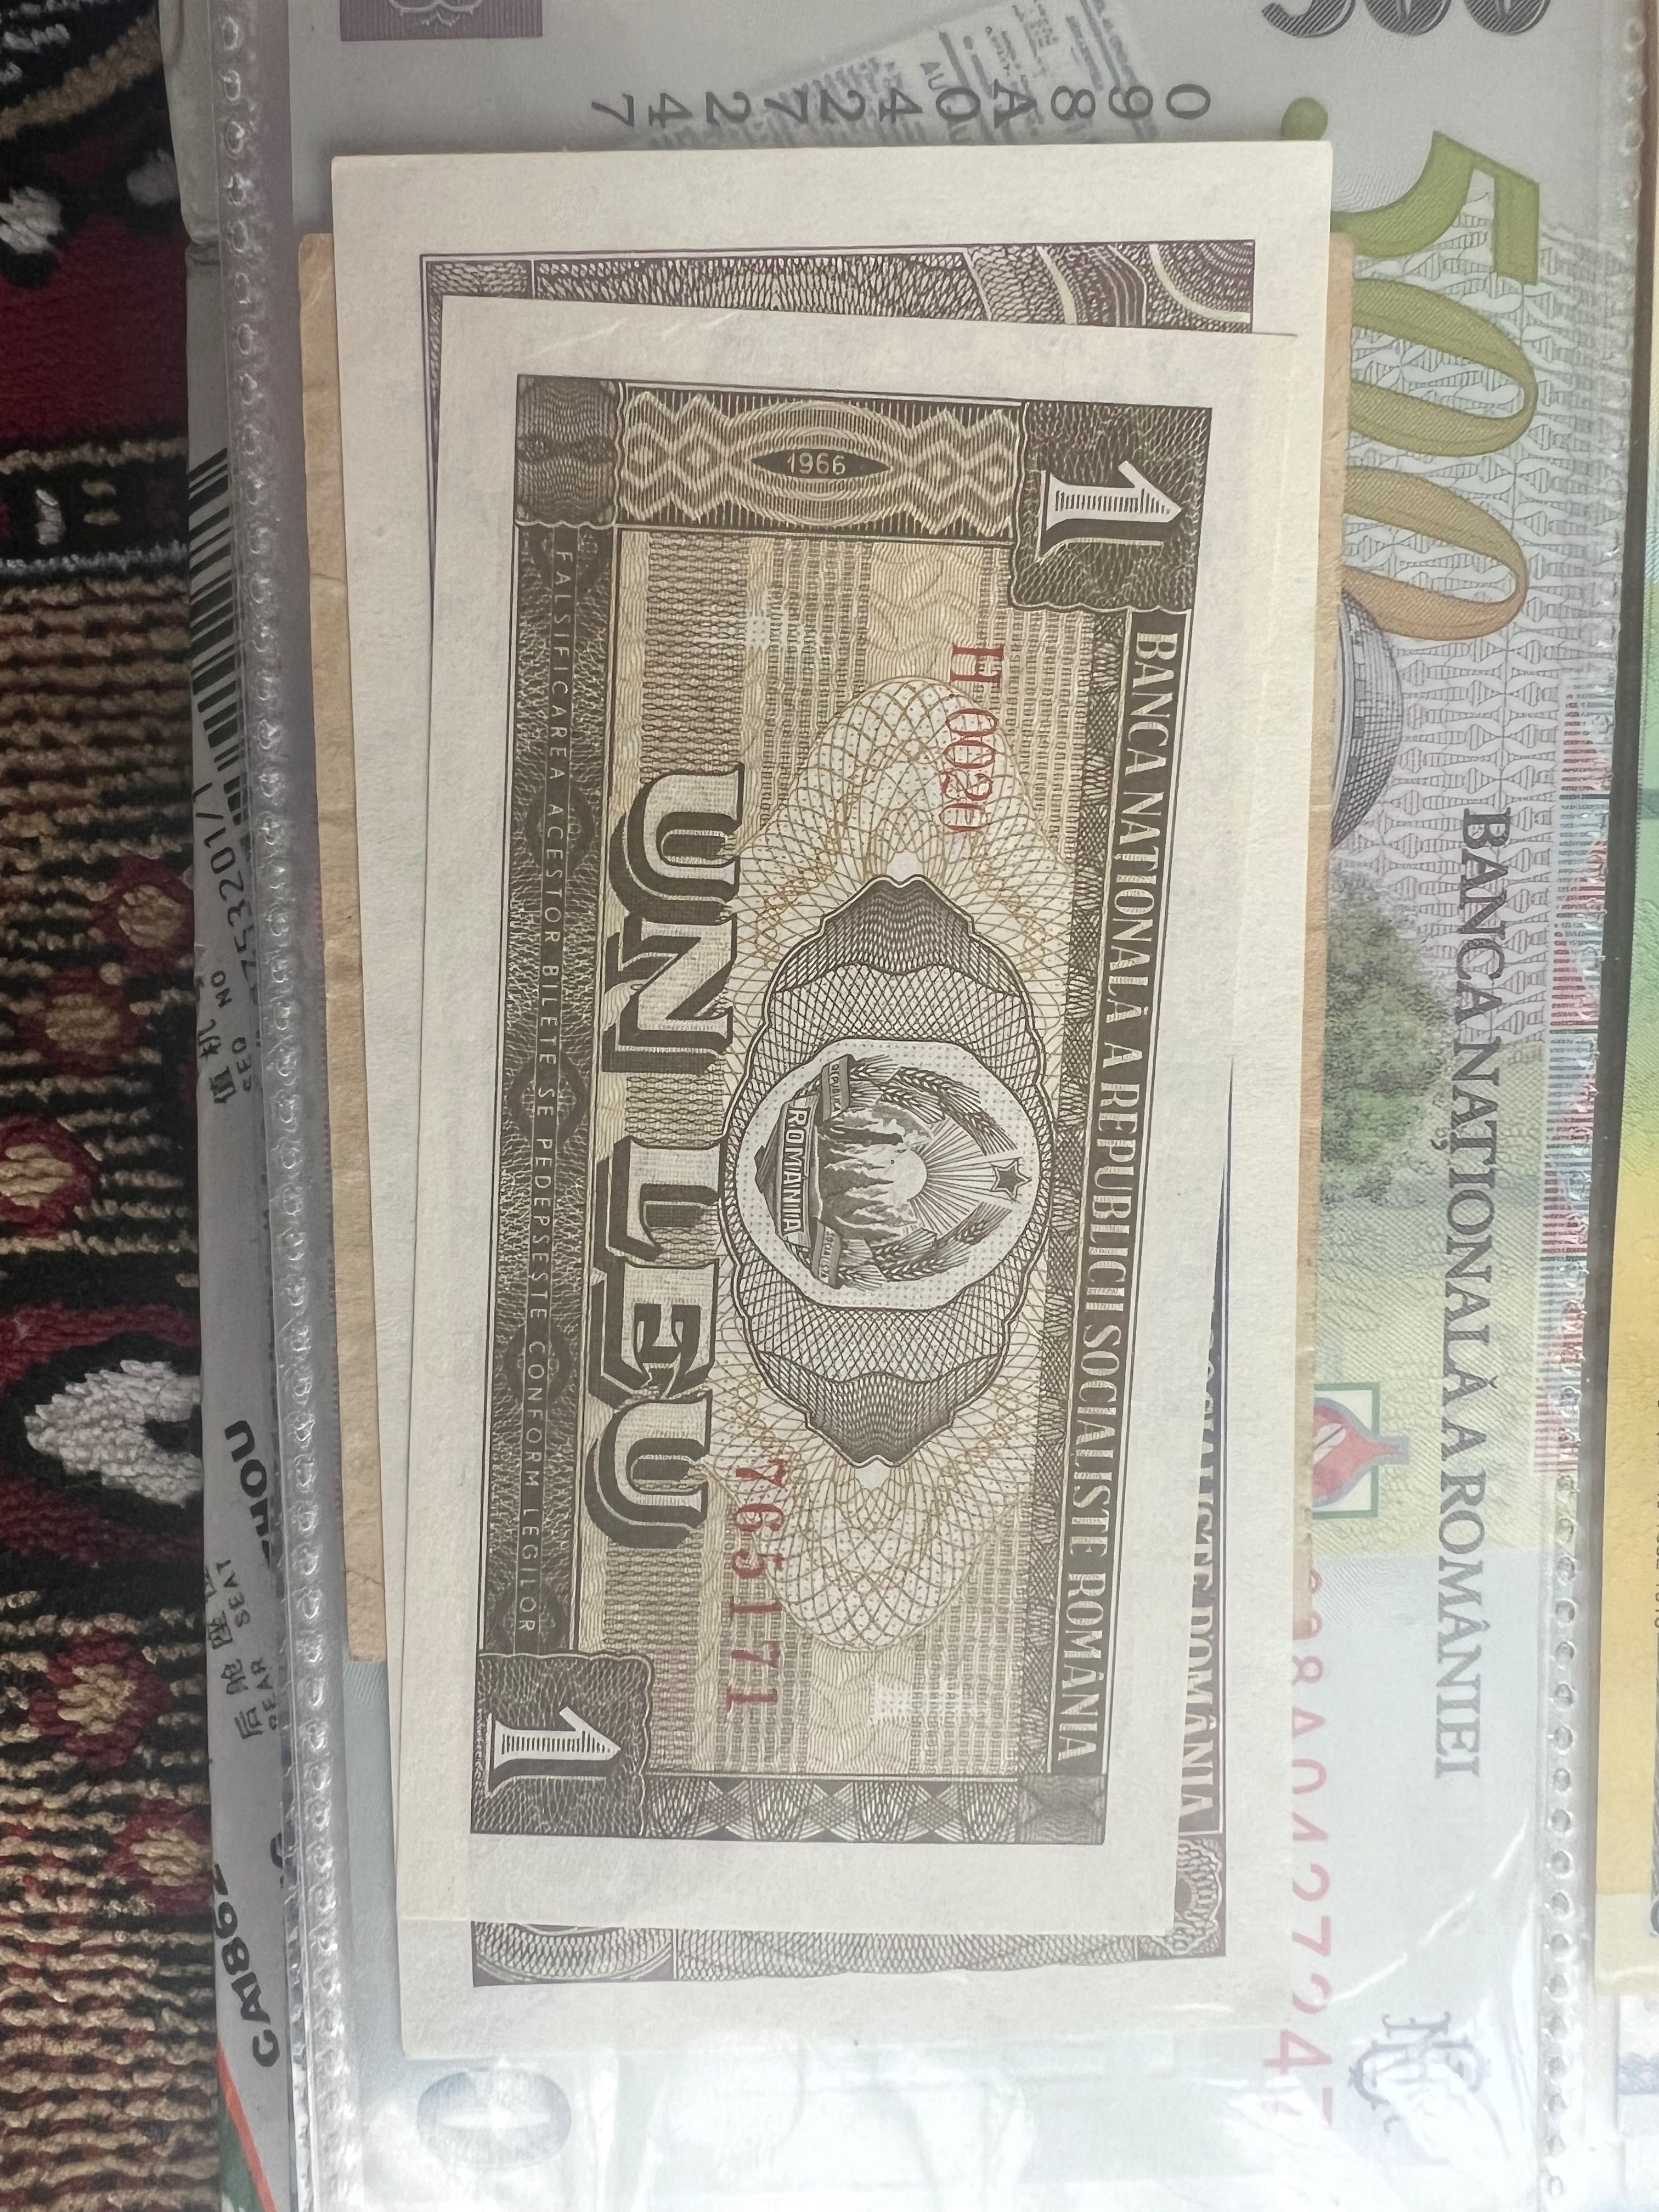 Bancnote România